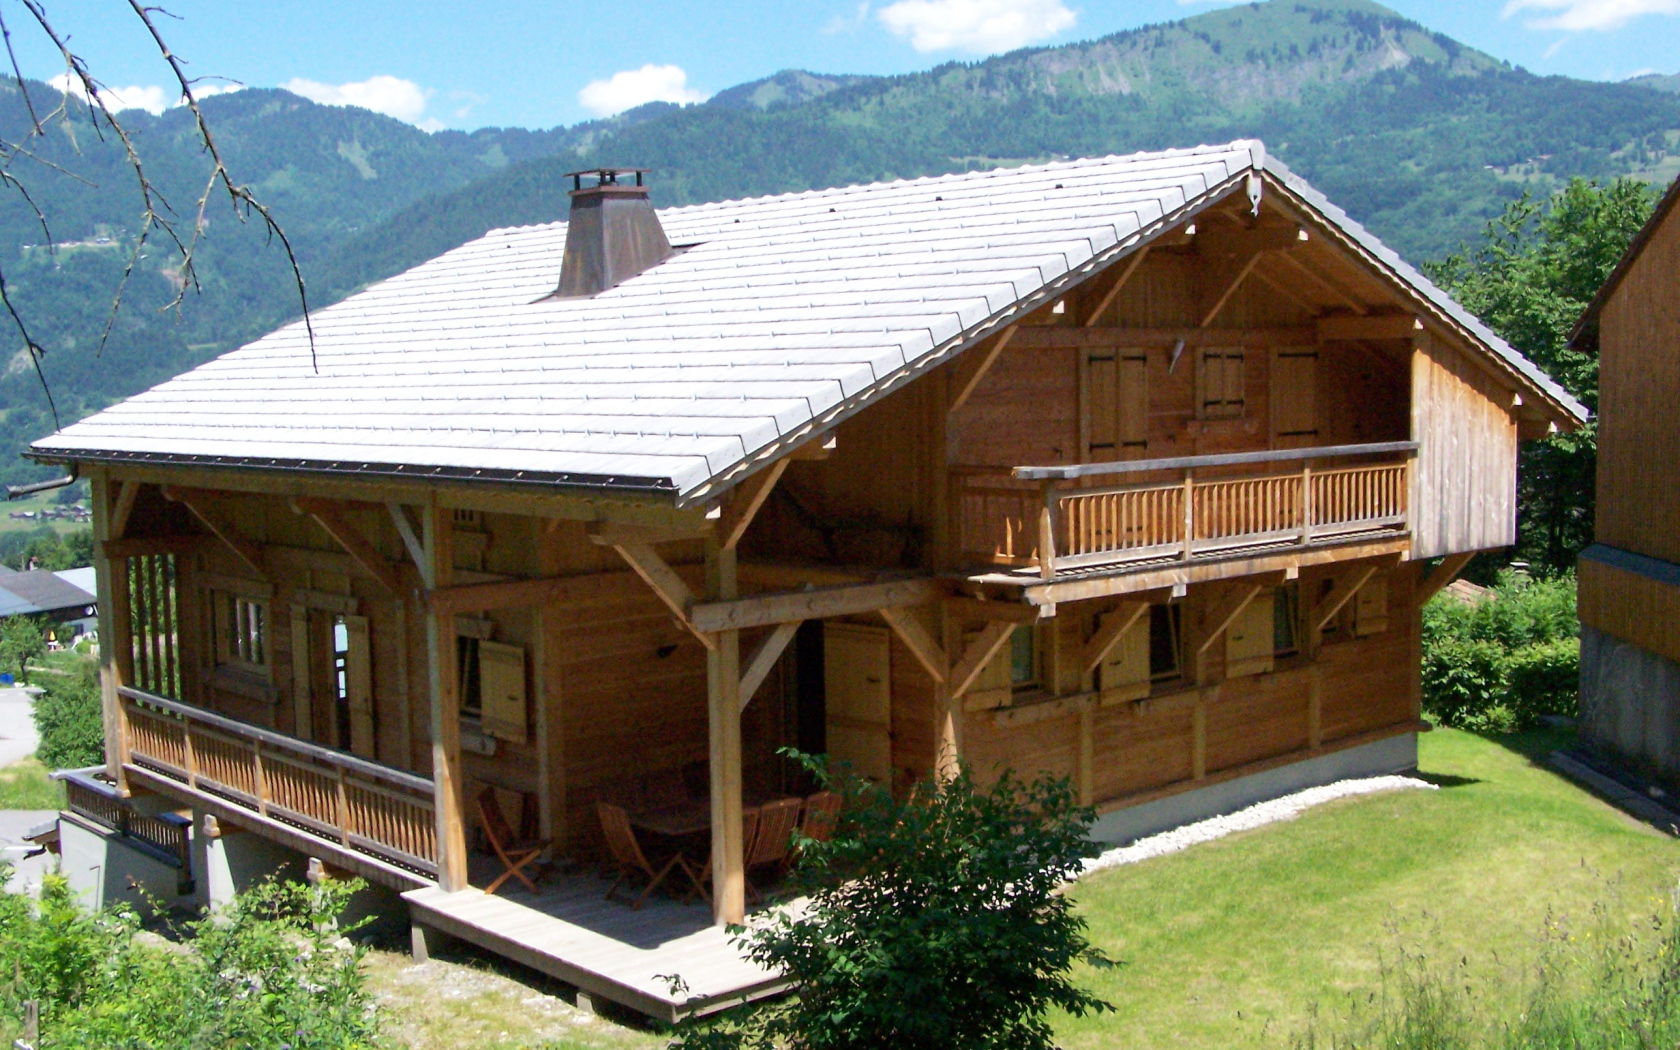 Wooden house in the ski resort of Samoens, France